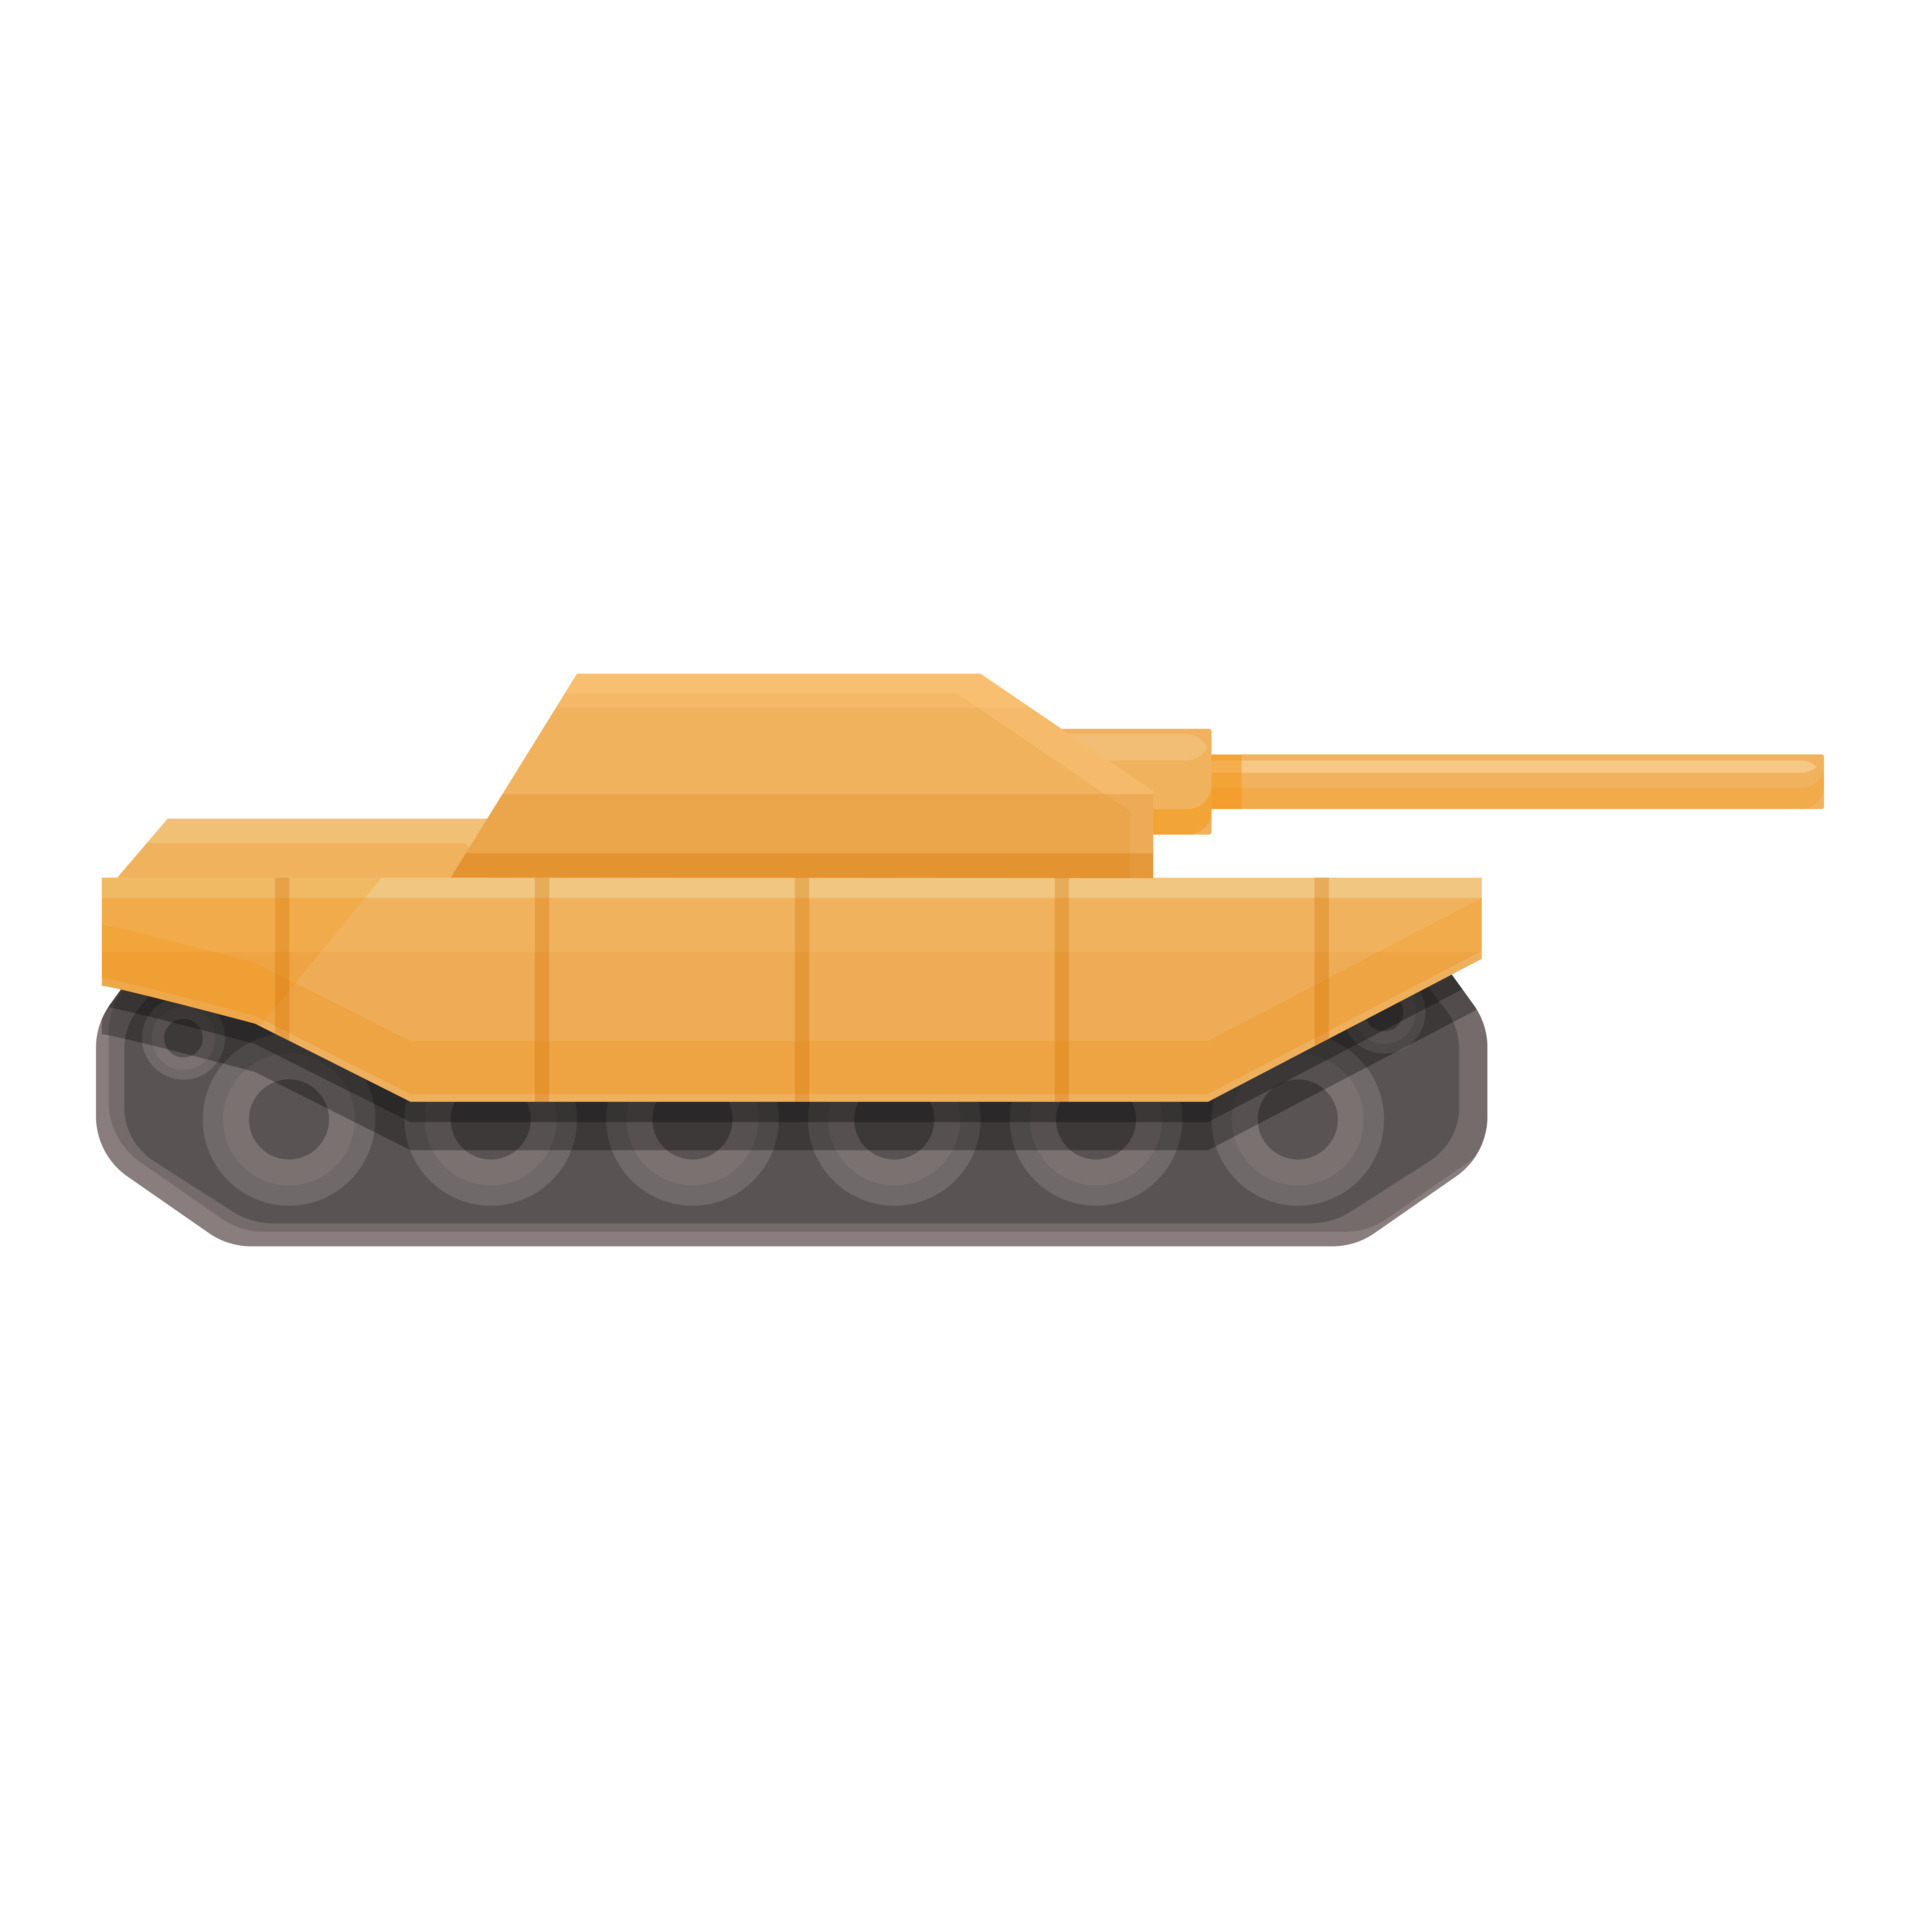 War tank icon cartoon vector. Army battle 14334583 Vector Art at Vecteezy